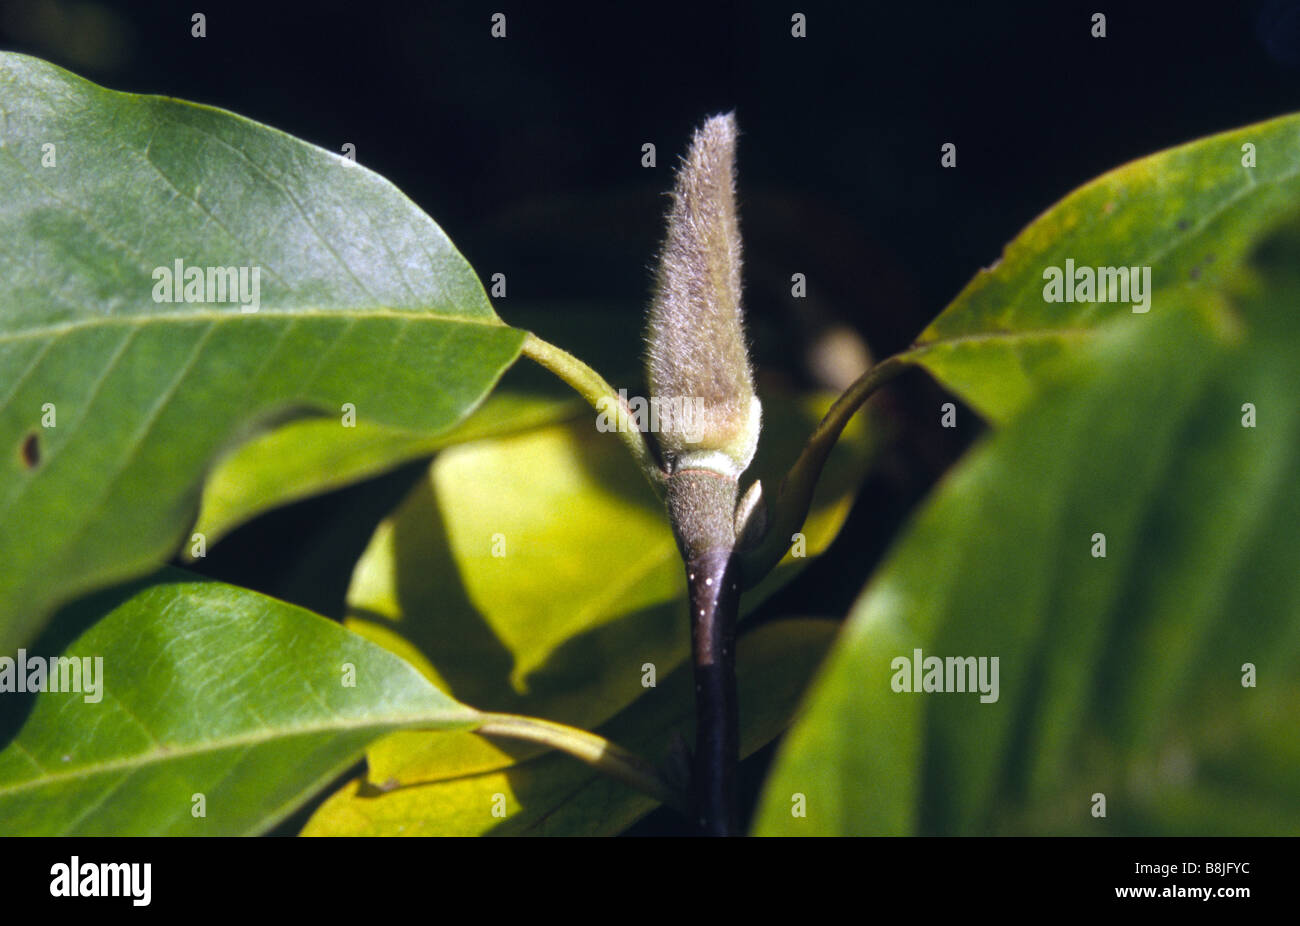 Magnolia Lennei Magnoliaceae seed pods Stock Photo